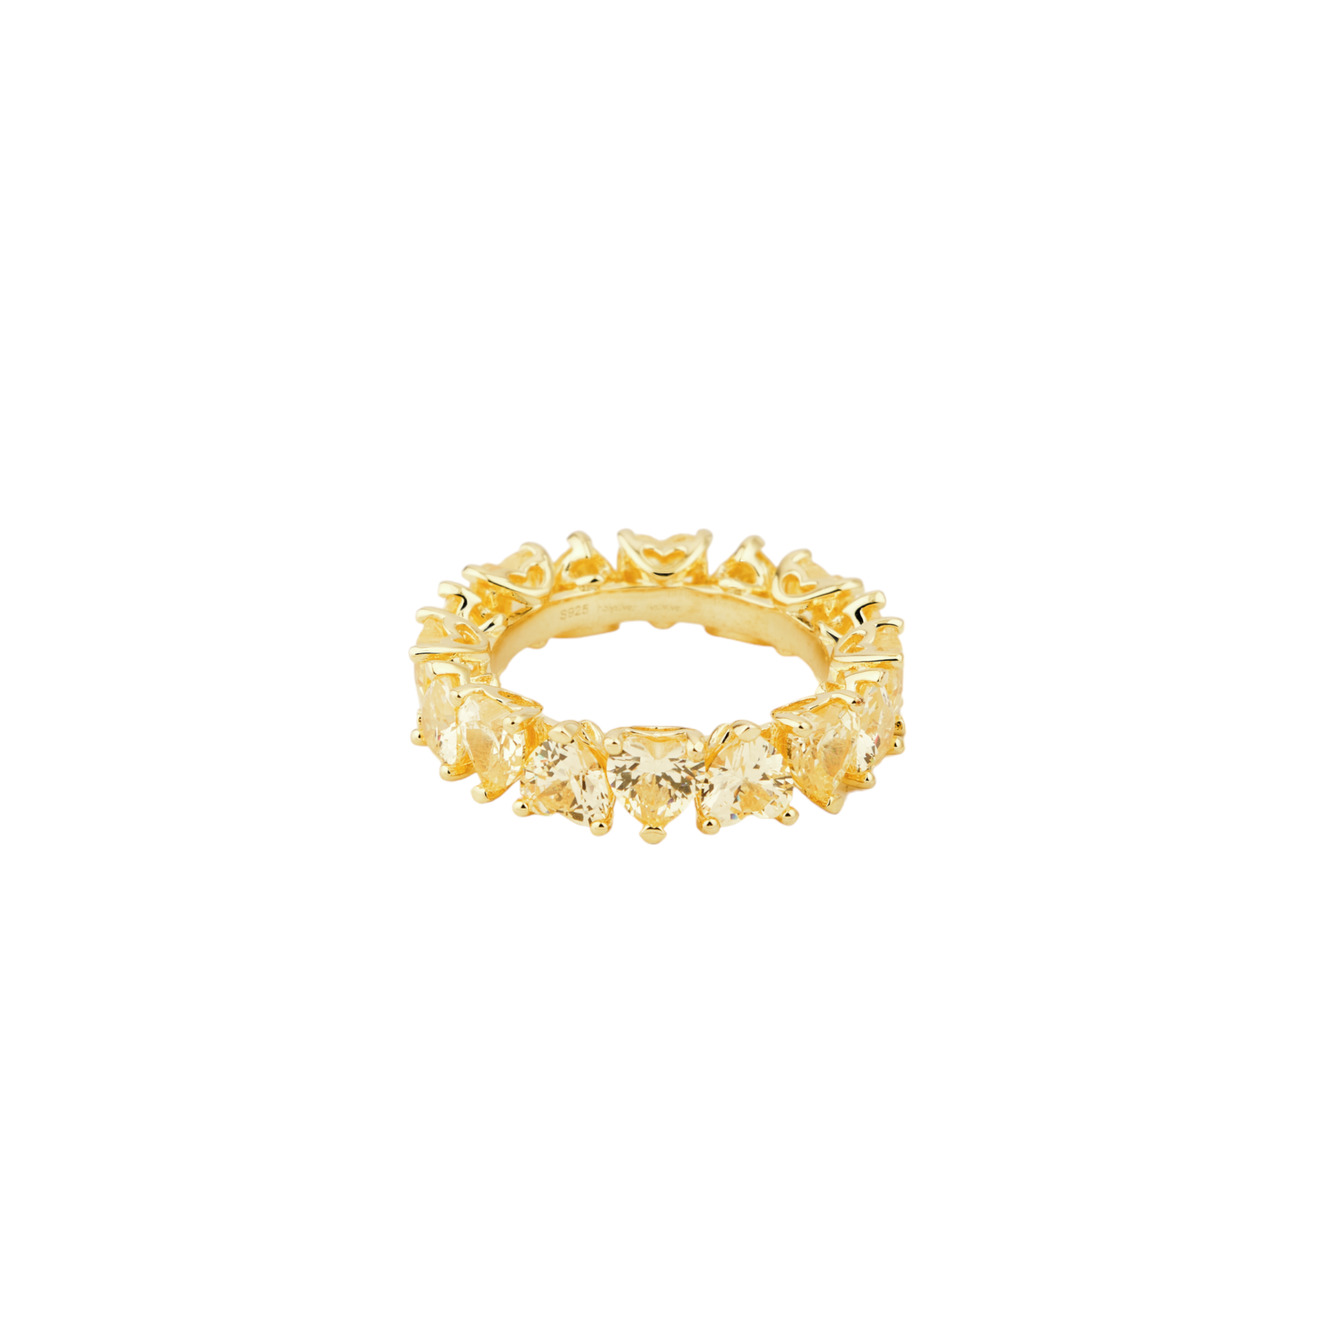 Holy Silver Тонкое кольцо из дорожки желтых кристаллов holy silver кольцо дорожка из розовых и белых кристаллов разной формы